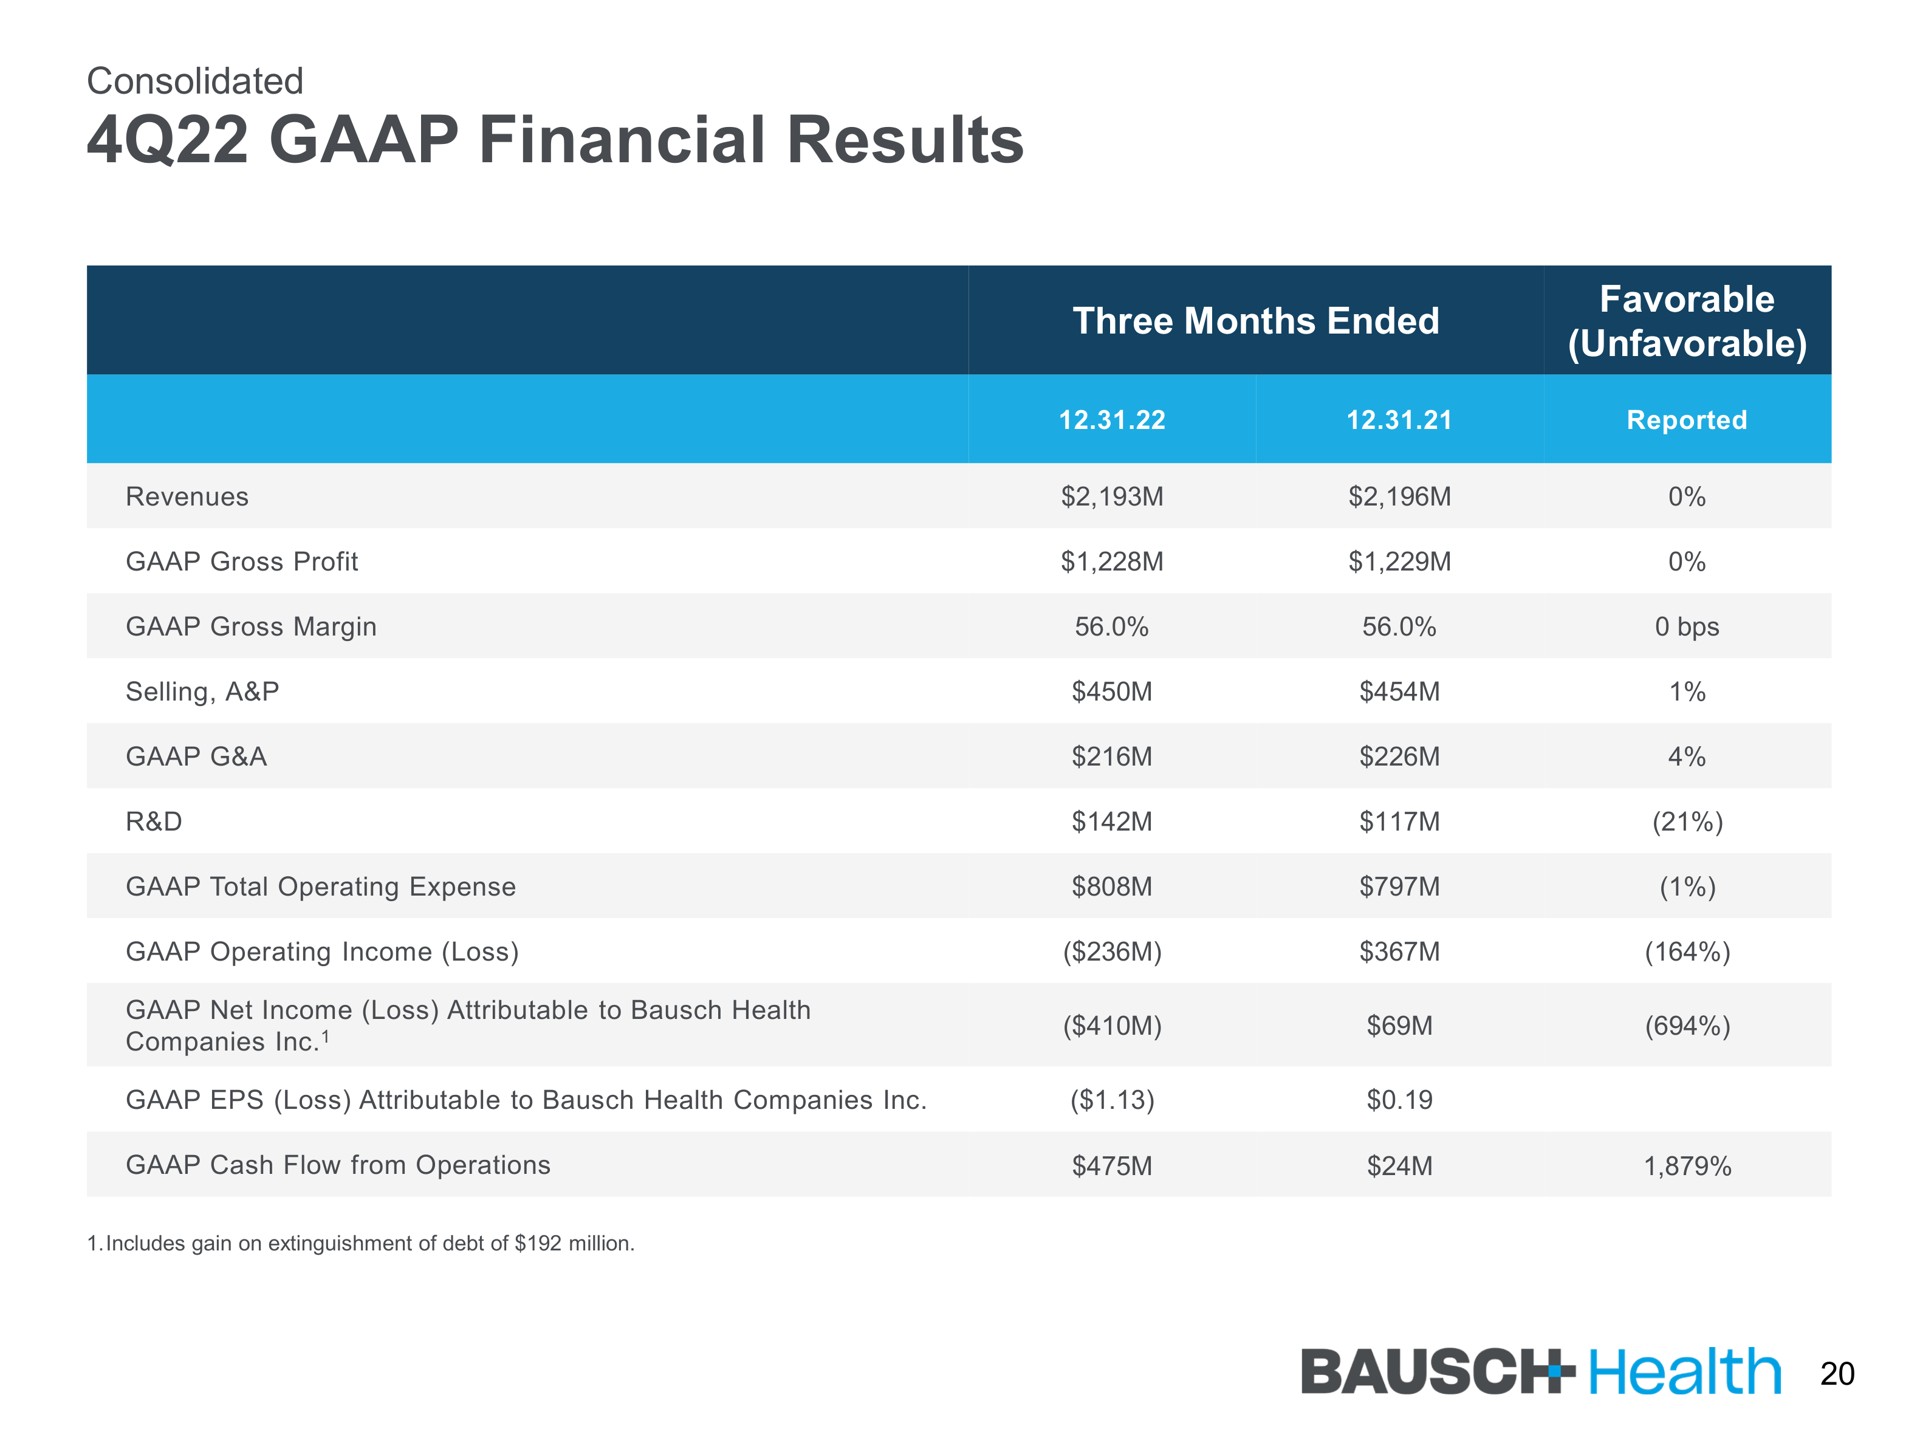 financial results health | Bausch Health Companies